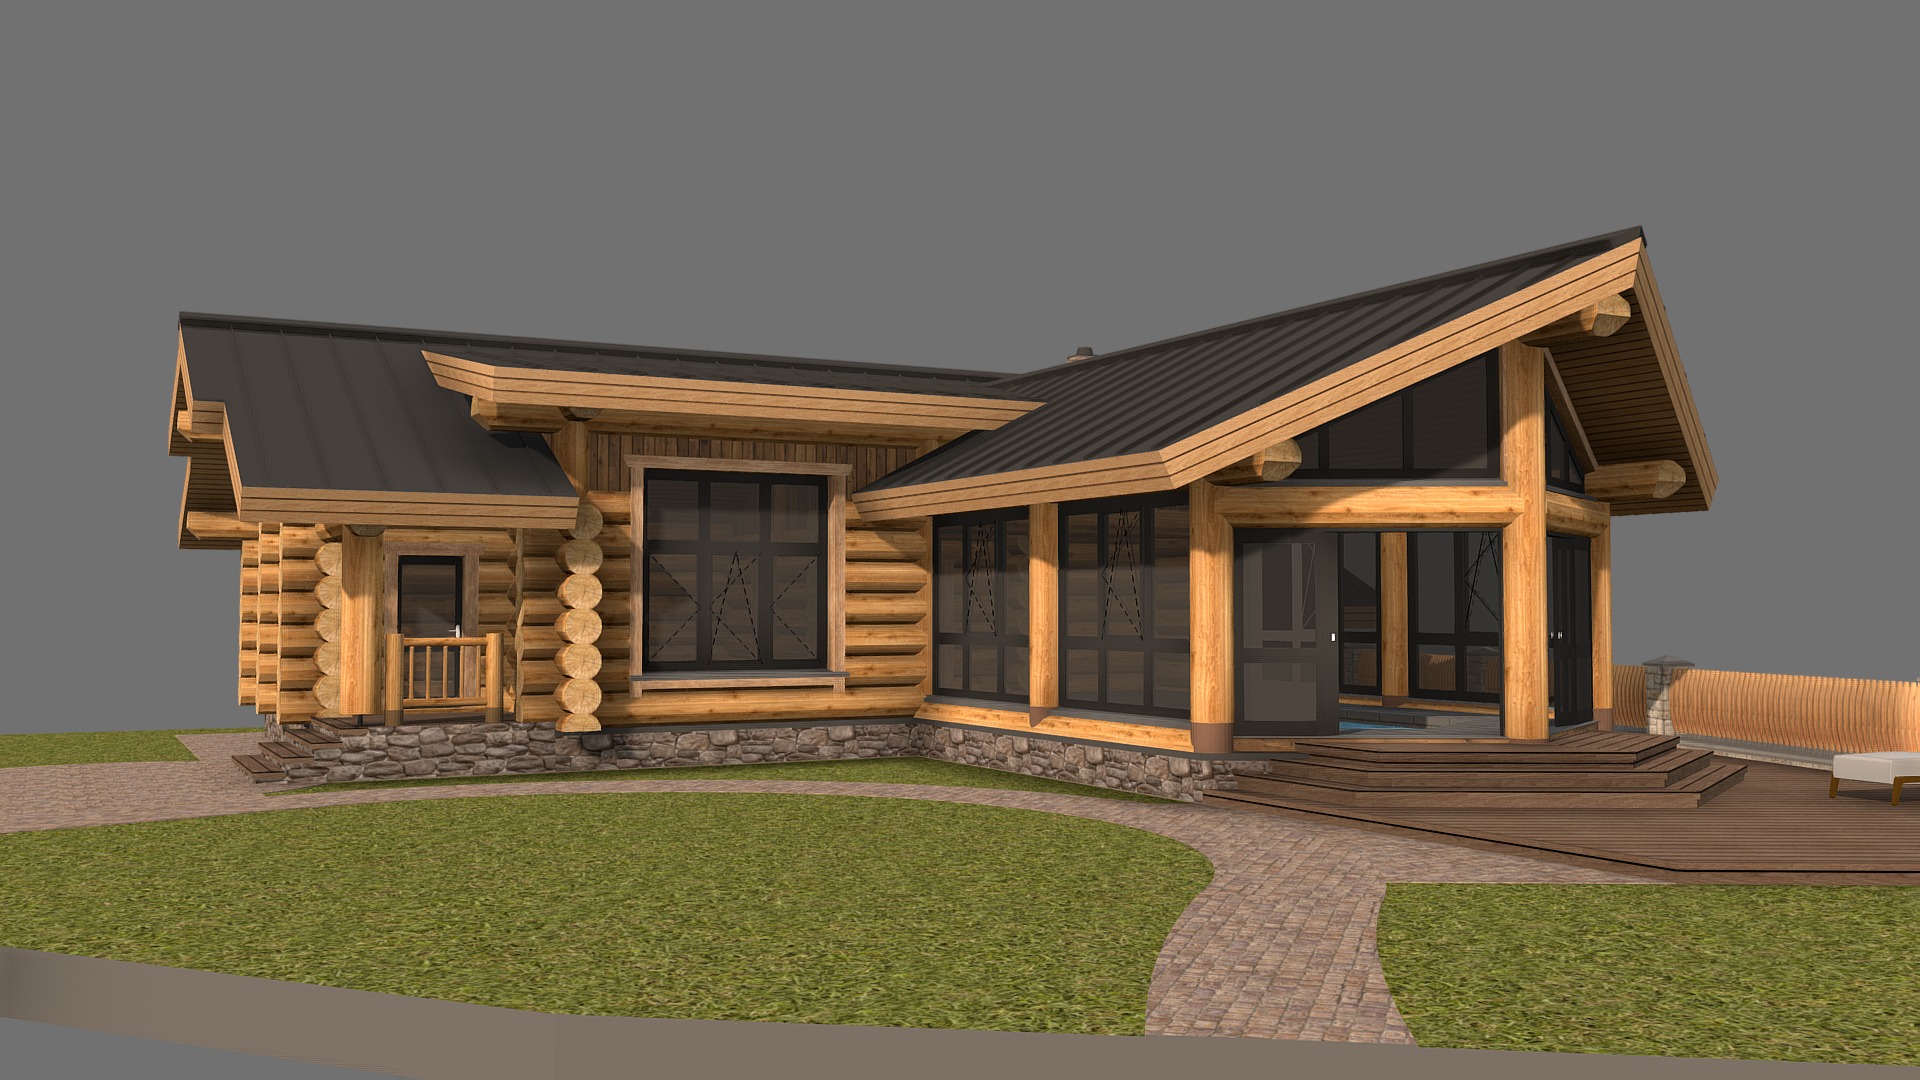 3D model Баня 2.0 - This is a 3D model of the Баня 2.0. The 3D model is about a house with a grass yard.